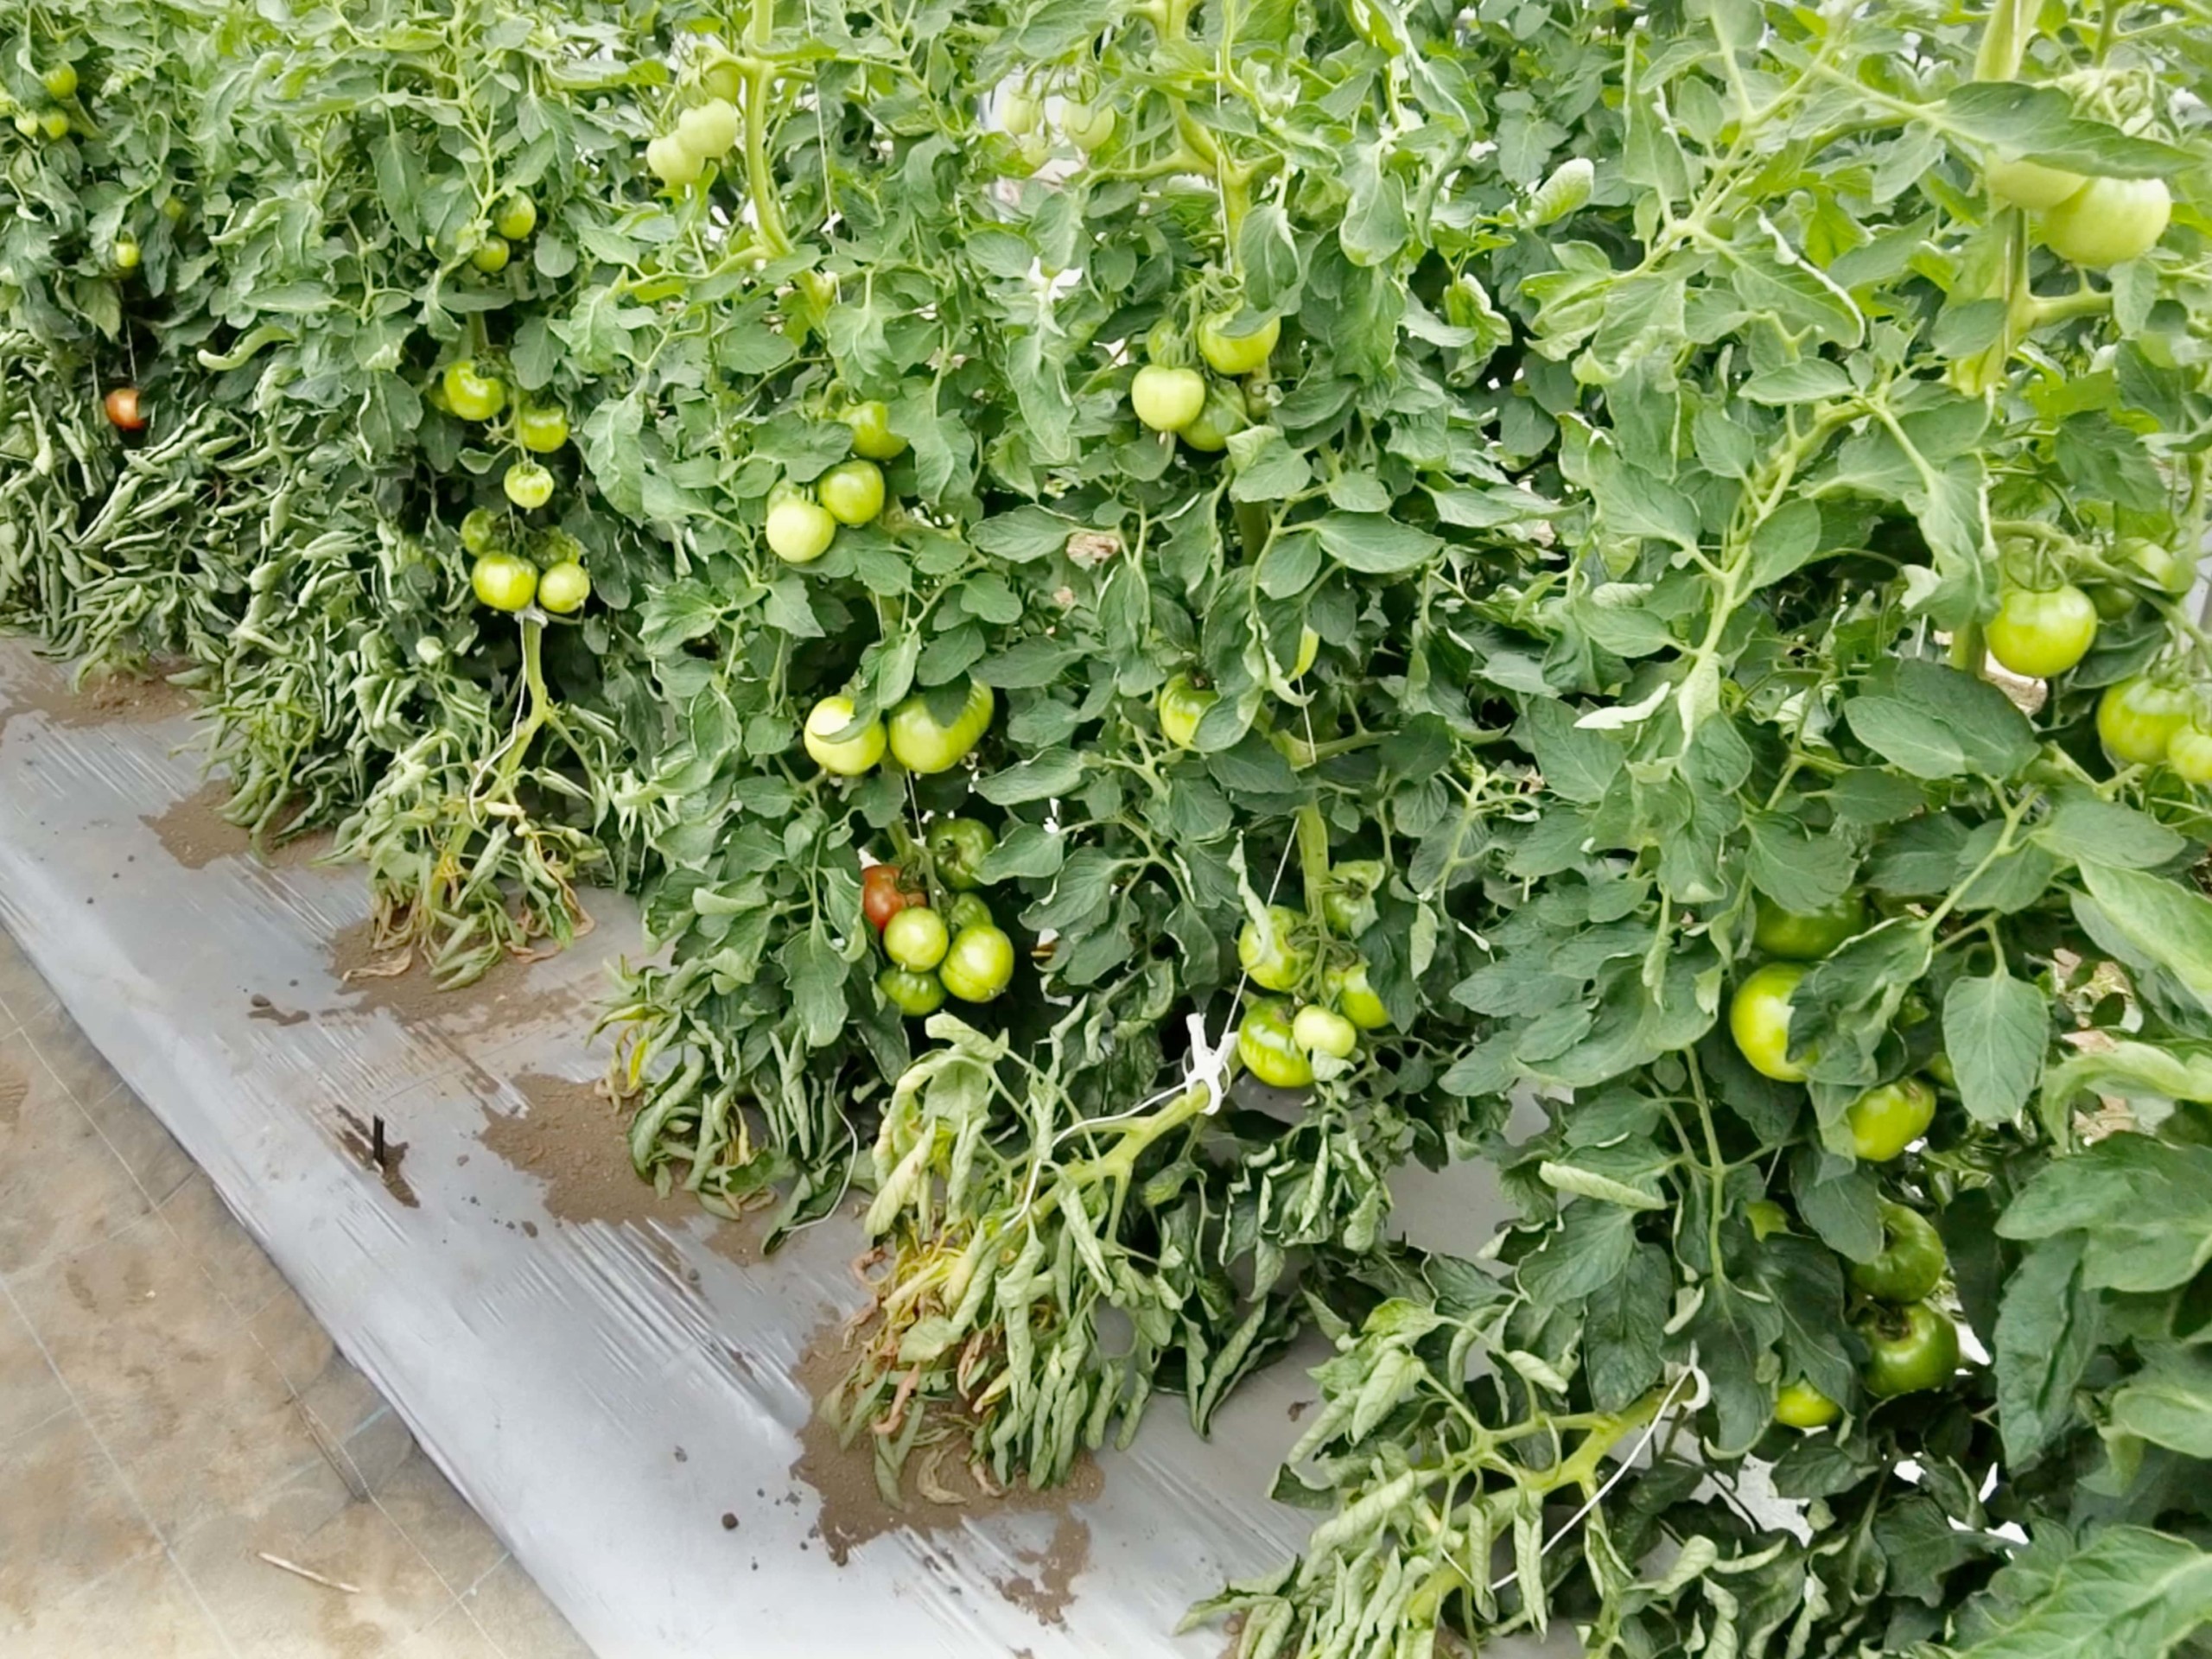 field-trials-tomato-4608x3456-2-8